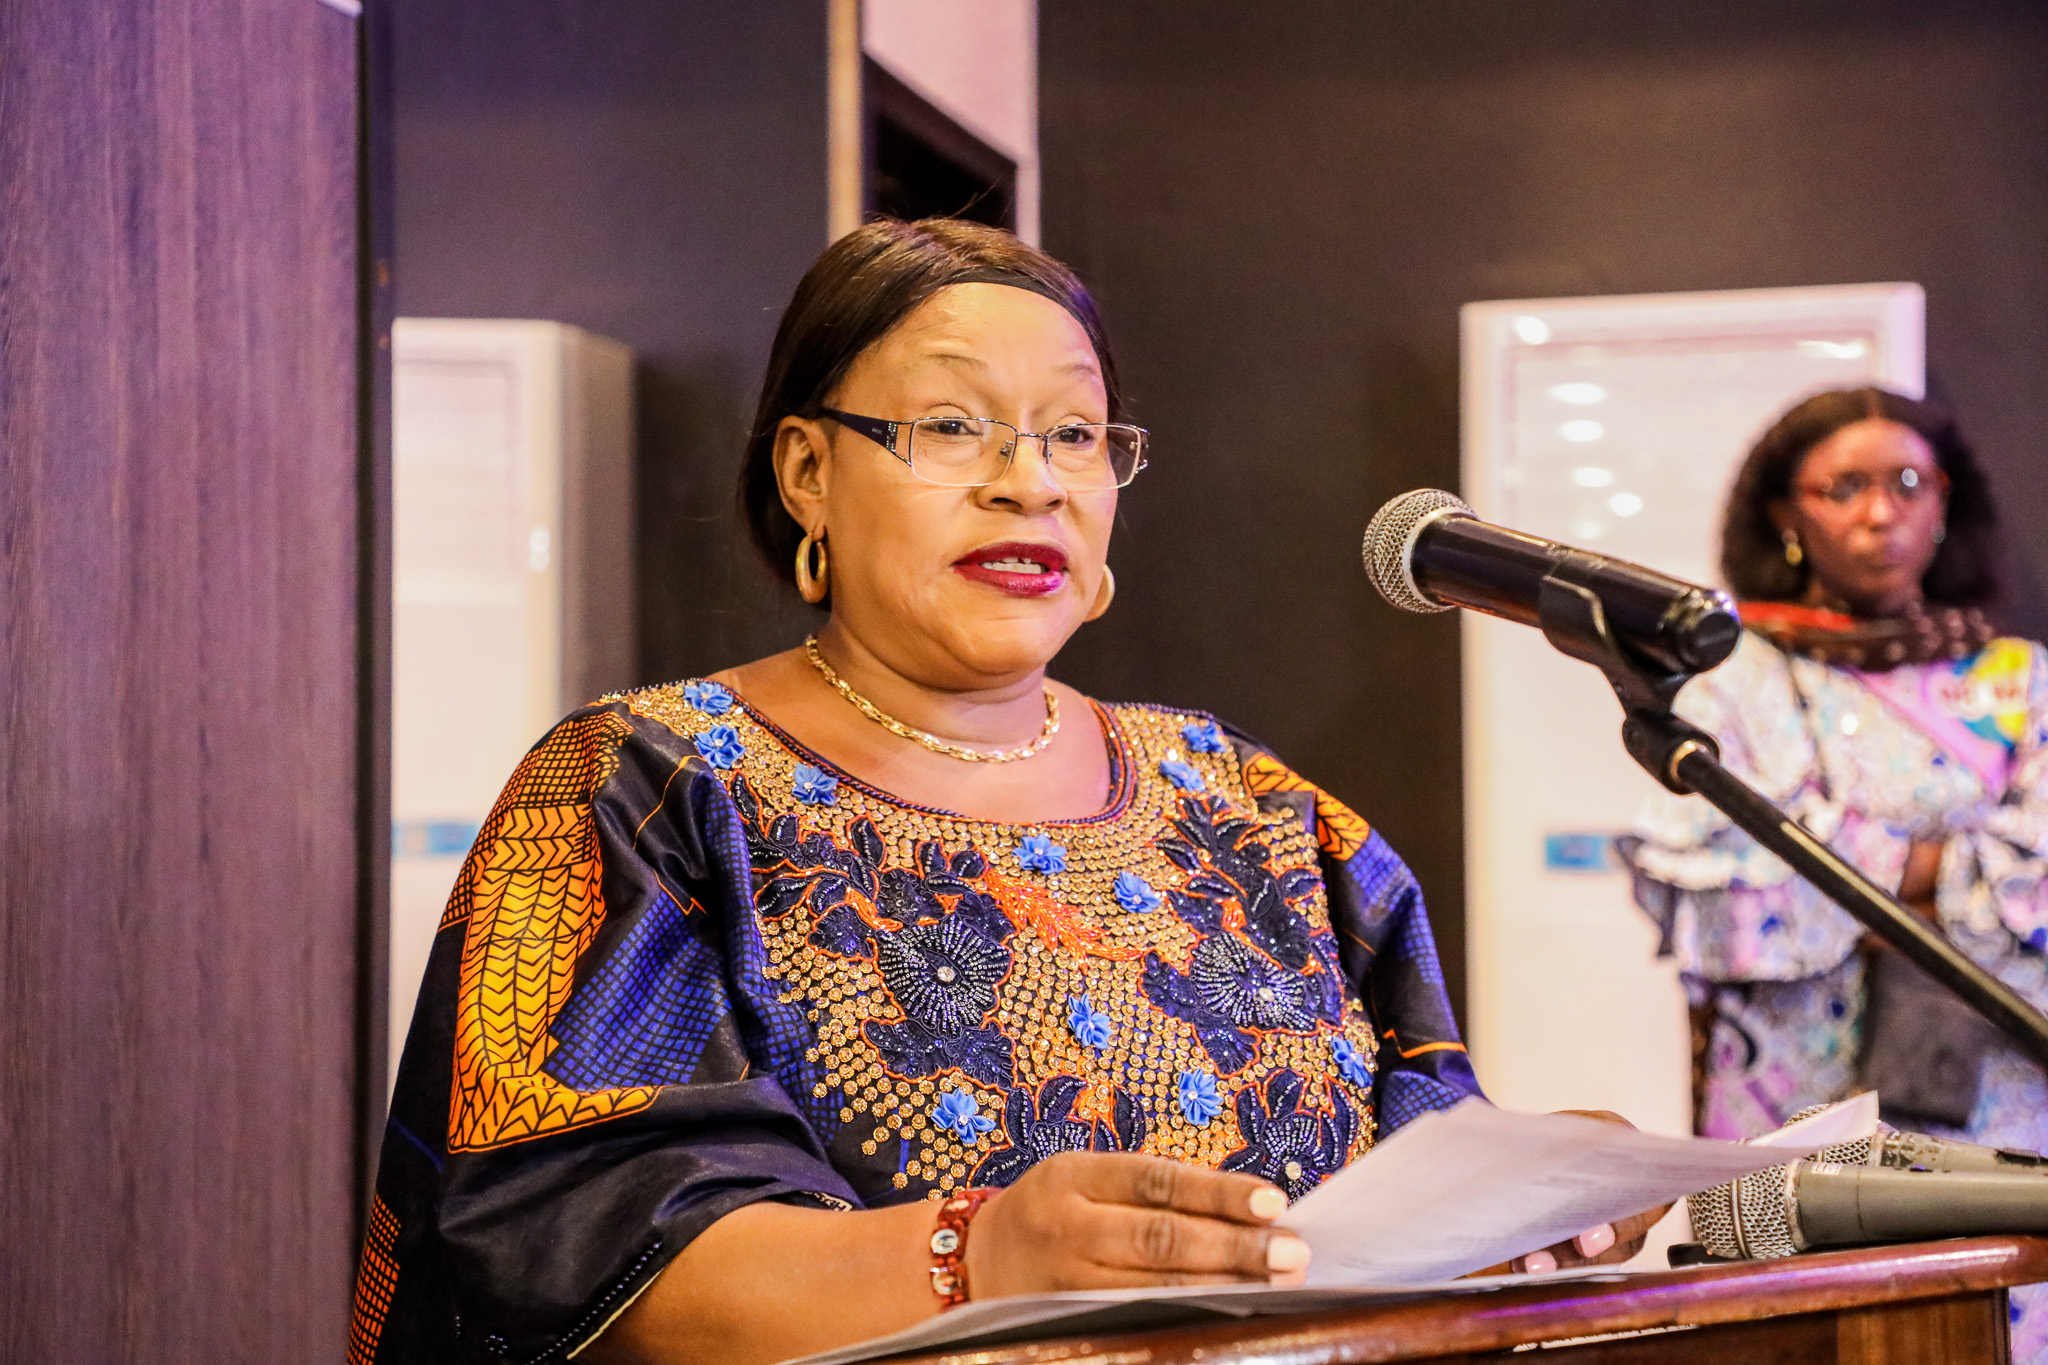 Son Excellence Mme Mireille Masangu Bibi Muloko, Ministre du Genre, Famille et Enfant a officiellement lancé l’inscription à la cartographie en exprimant le plus grand soutien du Gouvernement à l'initiative